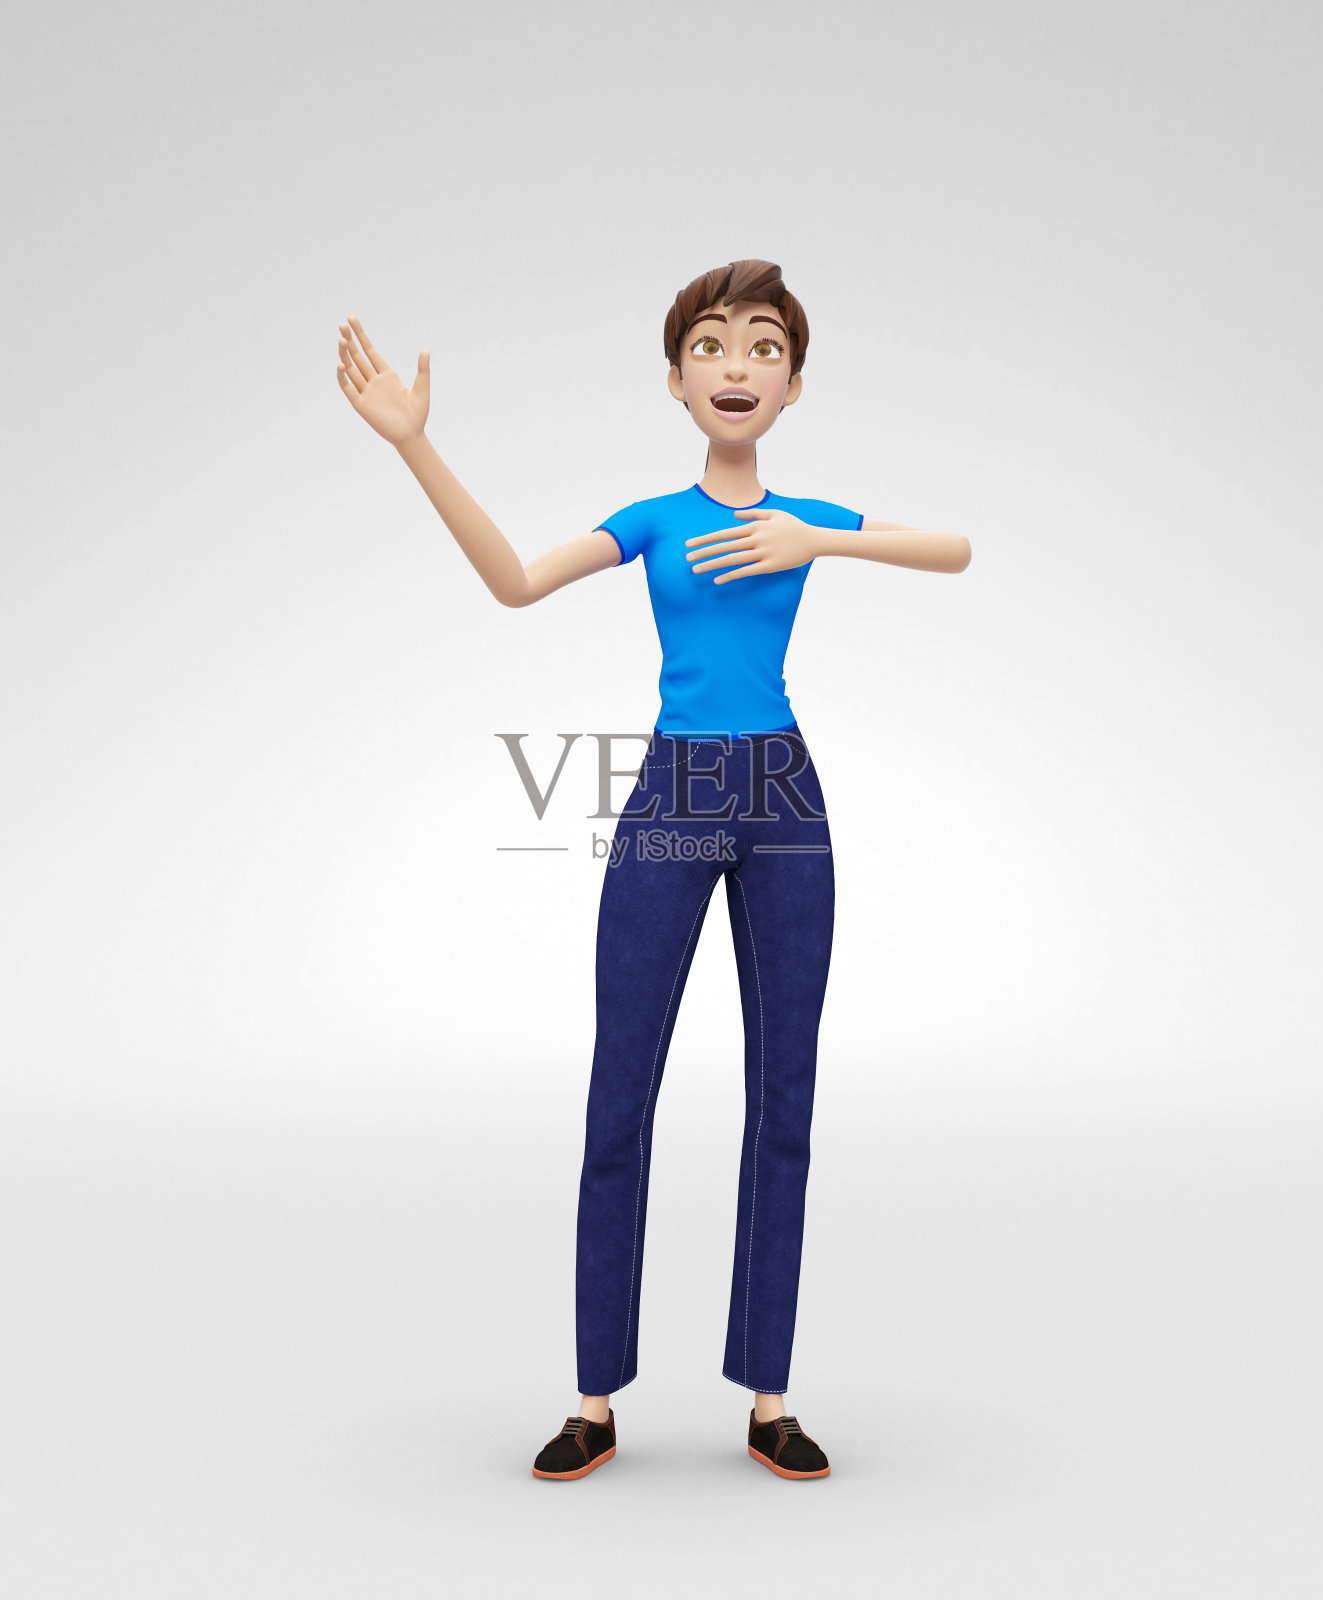 “创意、情感和艺术珍妮- 3D卡通女性角色模型-穿着休闲服装真诚而愉悦地唱歌”插画图片素材